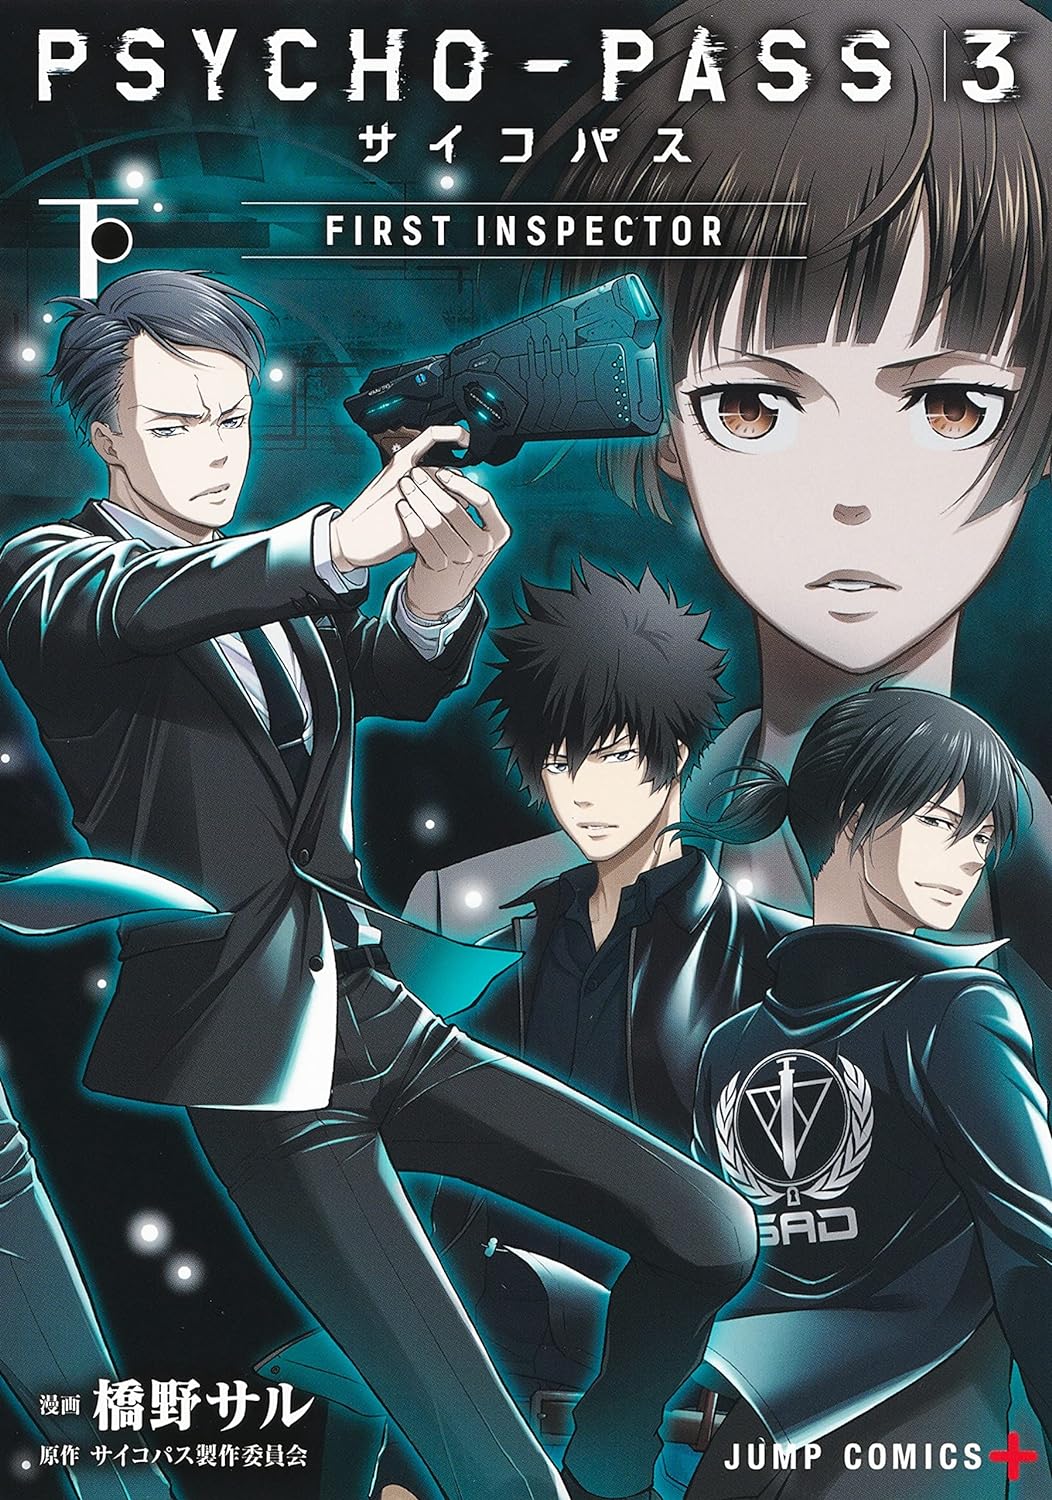 Psycho-Pass 3: First Inspector - MangaDex